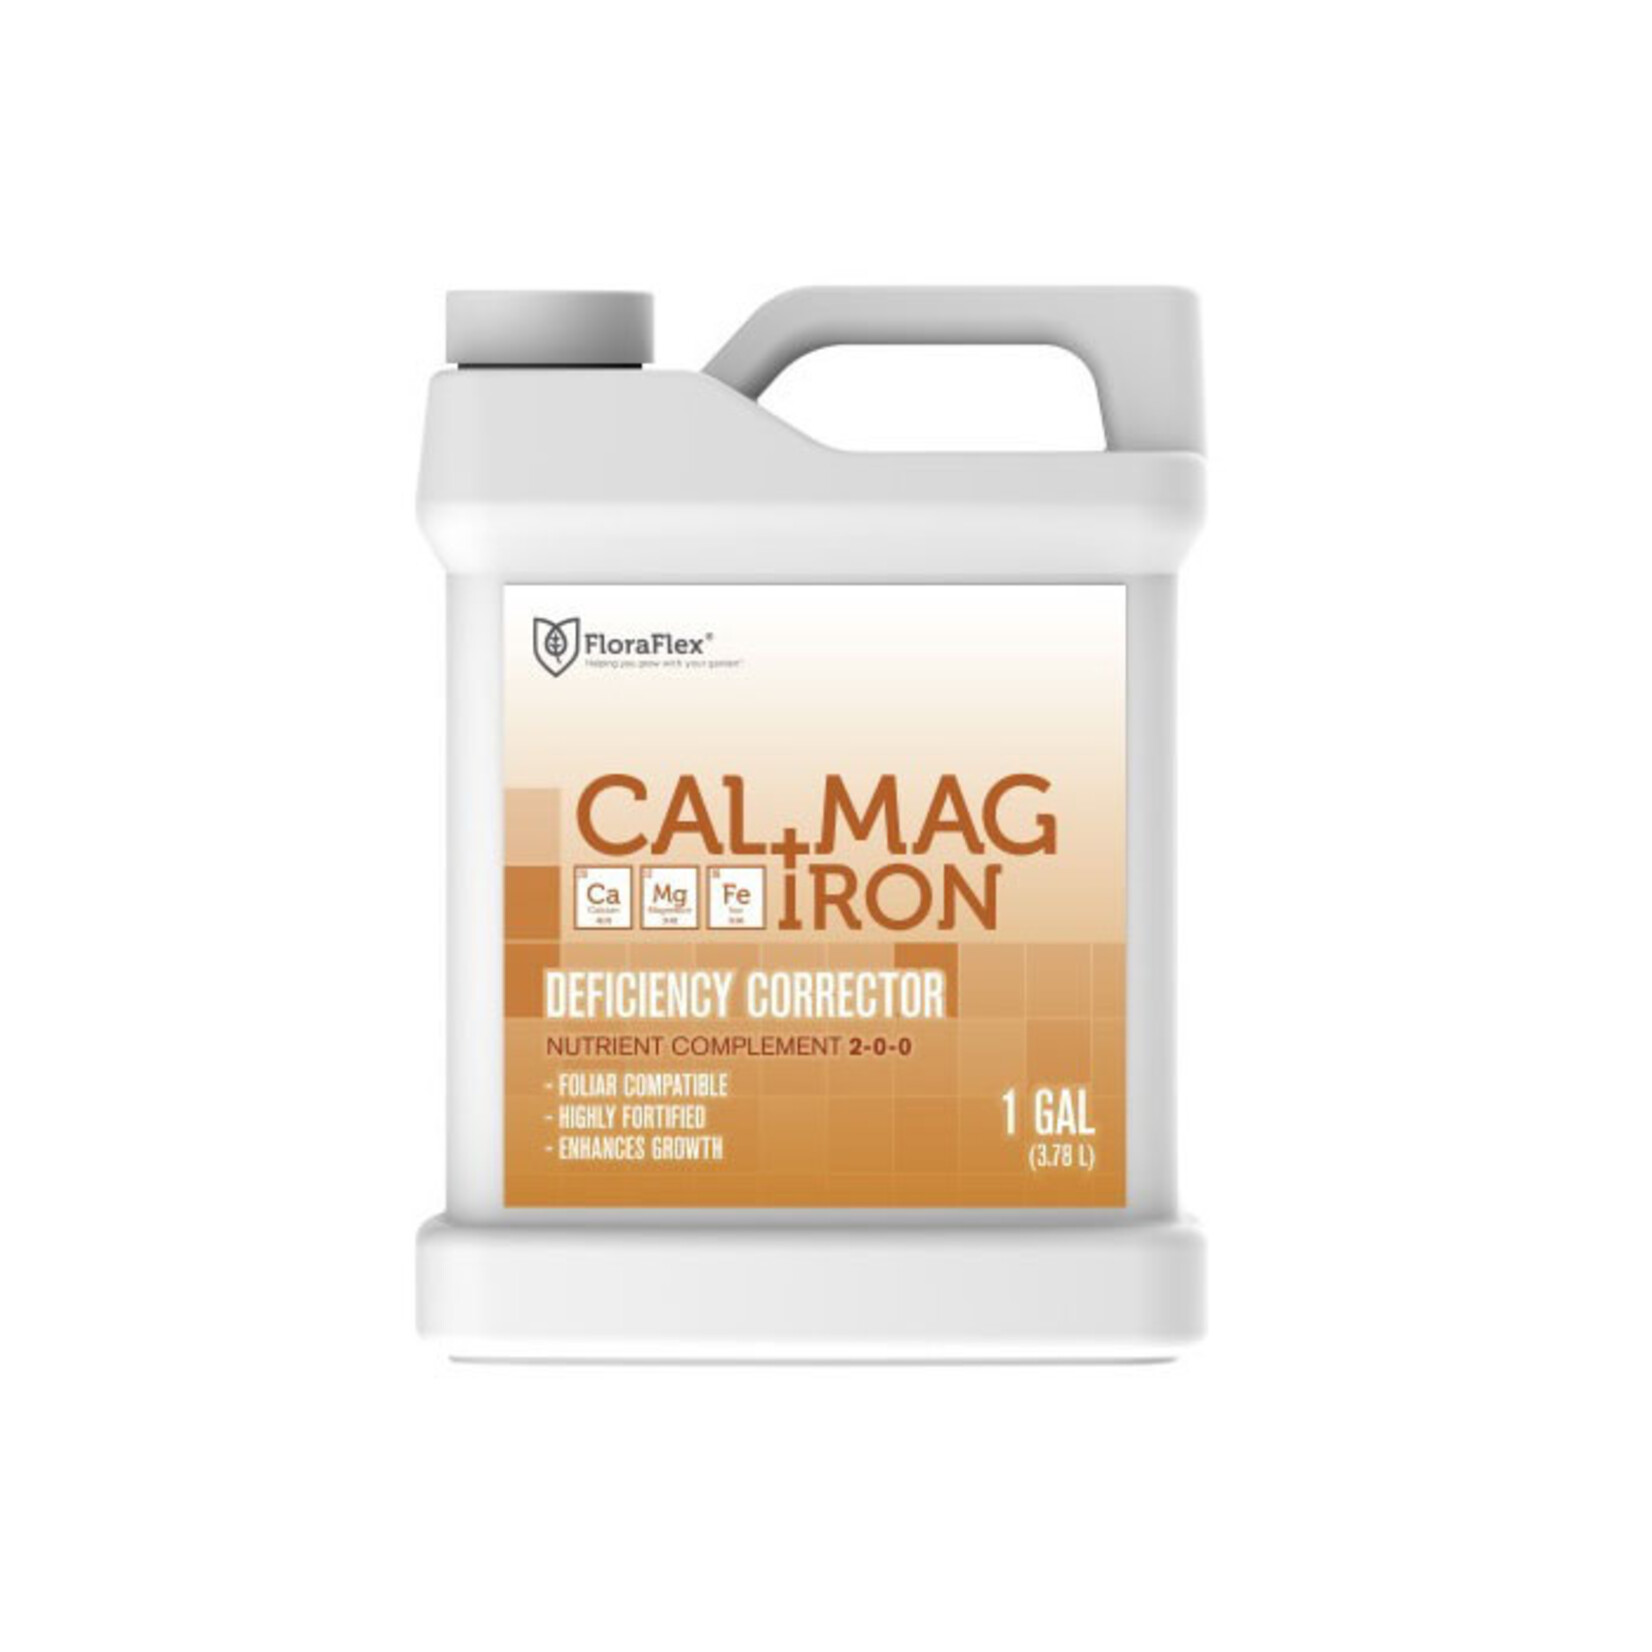 FloraFlex Cal + Mag + Iron Deficiency Corrector 1 Gallon